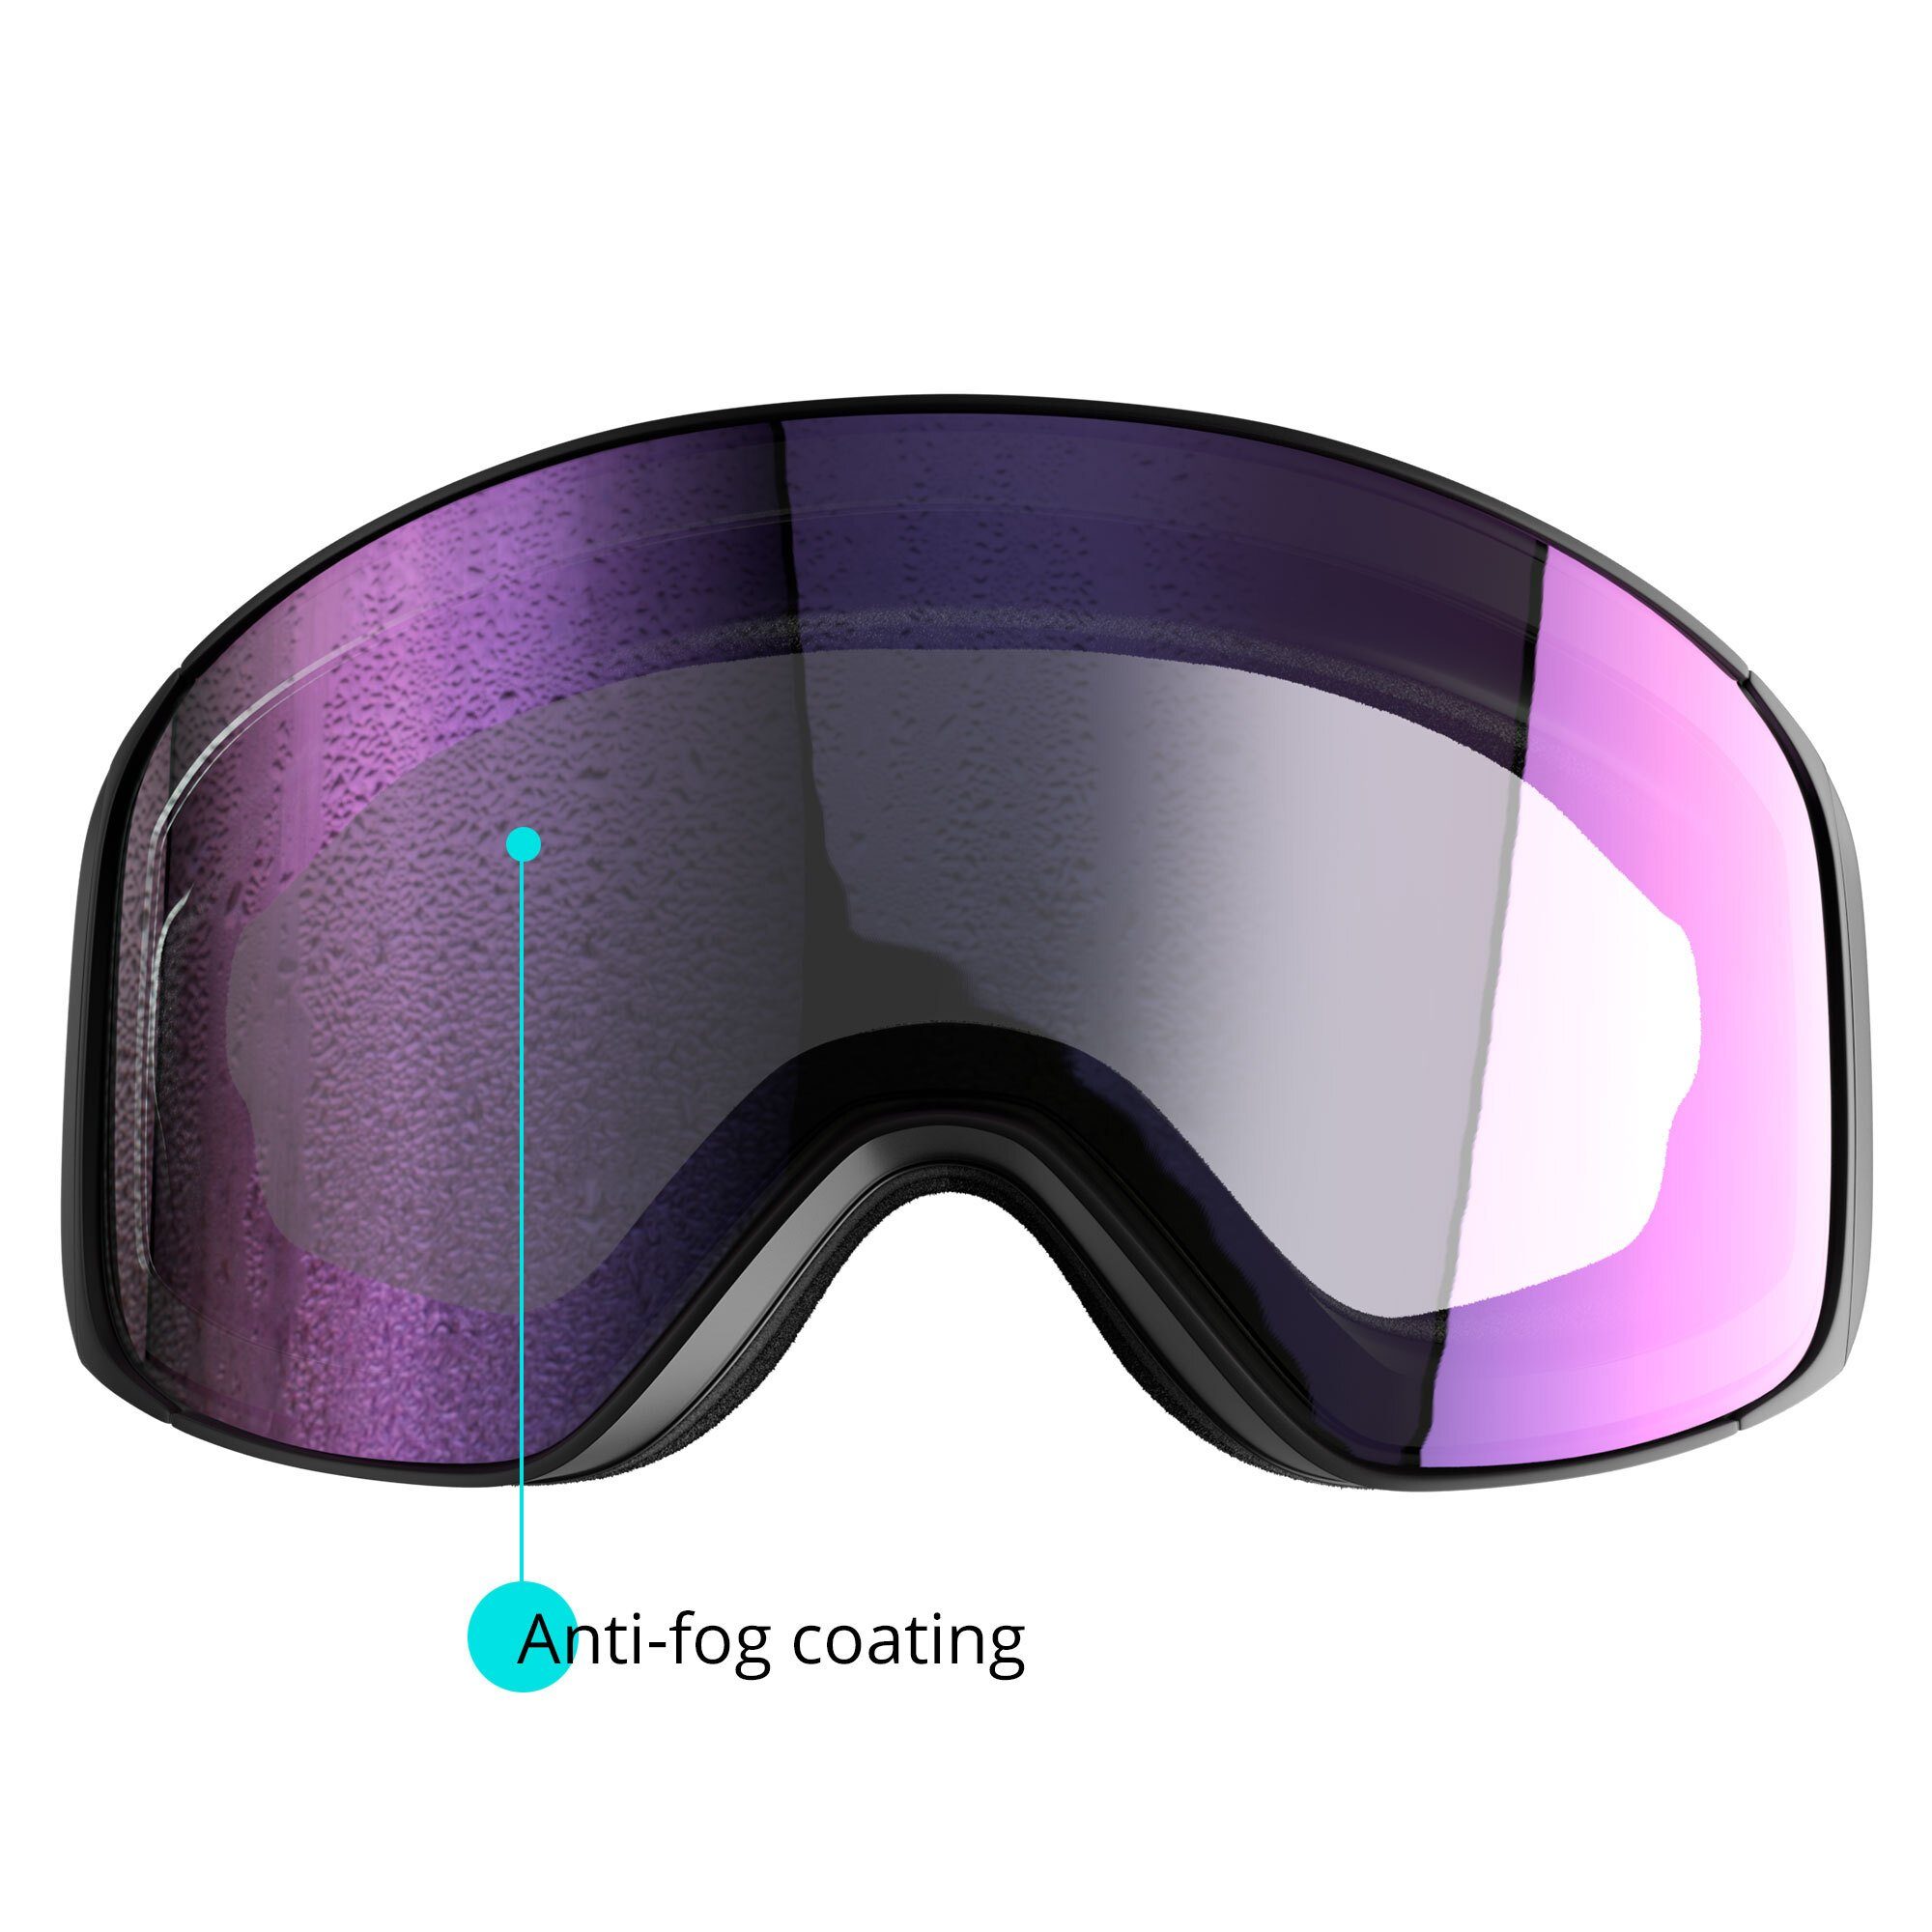 YEAZ Skibrille PEAK ski- snowboardbrille Snowboardbrille und Jugendliche Erwachsene und rot/weiß, für Premium-Ski